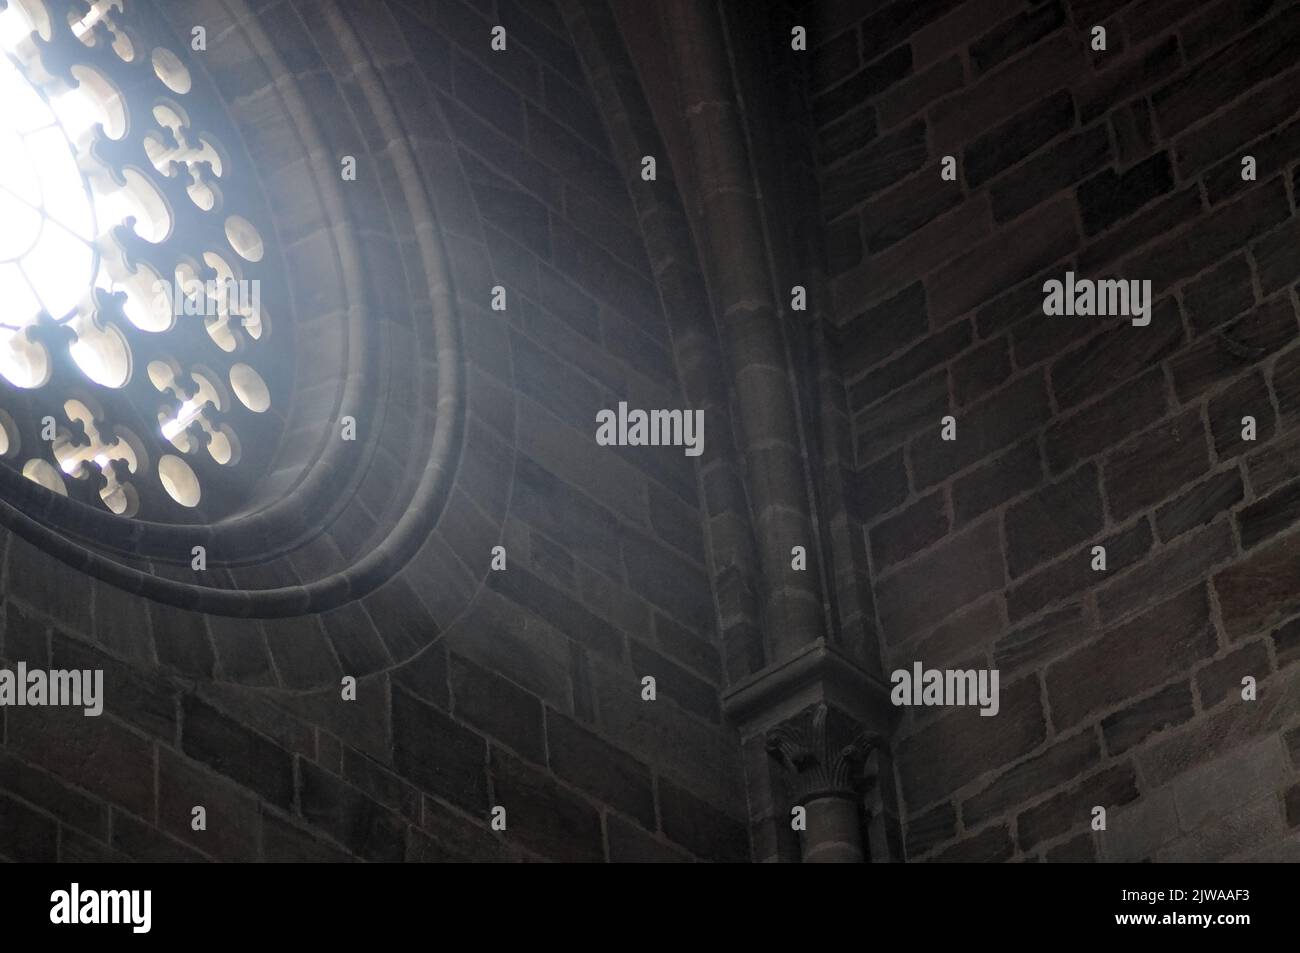 Innenansicht einer europäischen Kathedrale mit dunklen mittelalterlichen Mauern Stockfoto